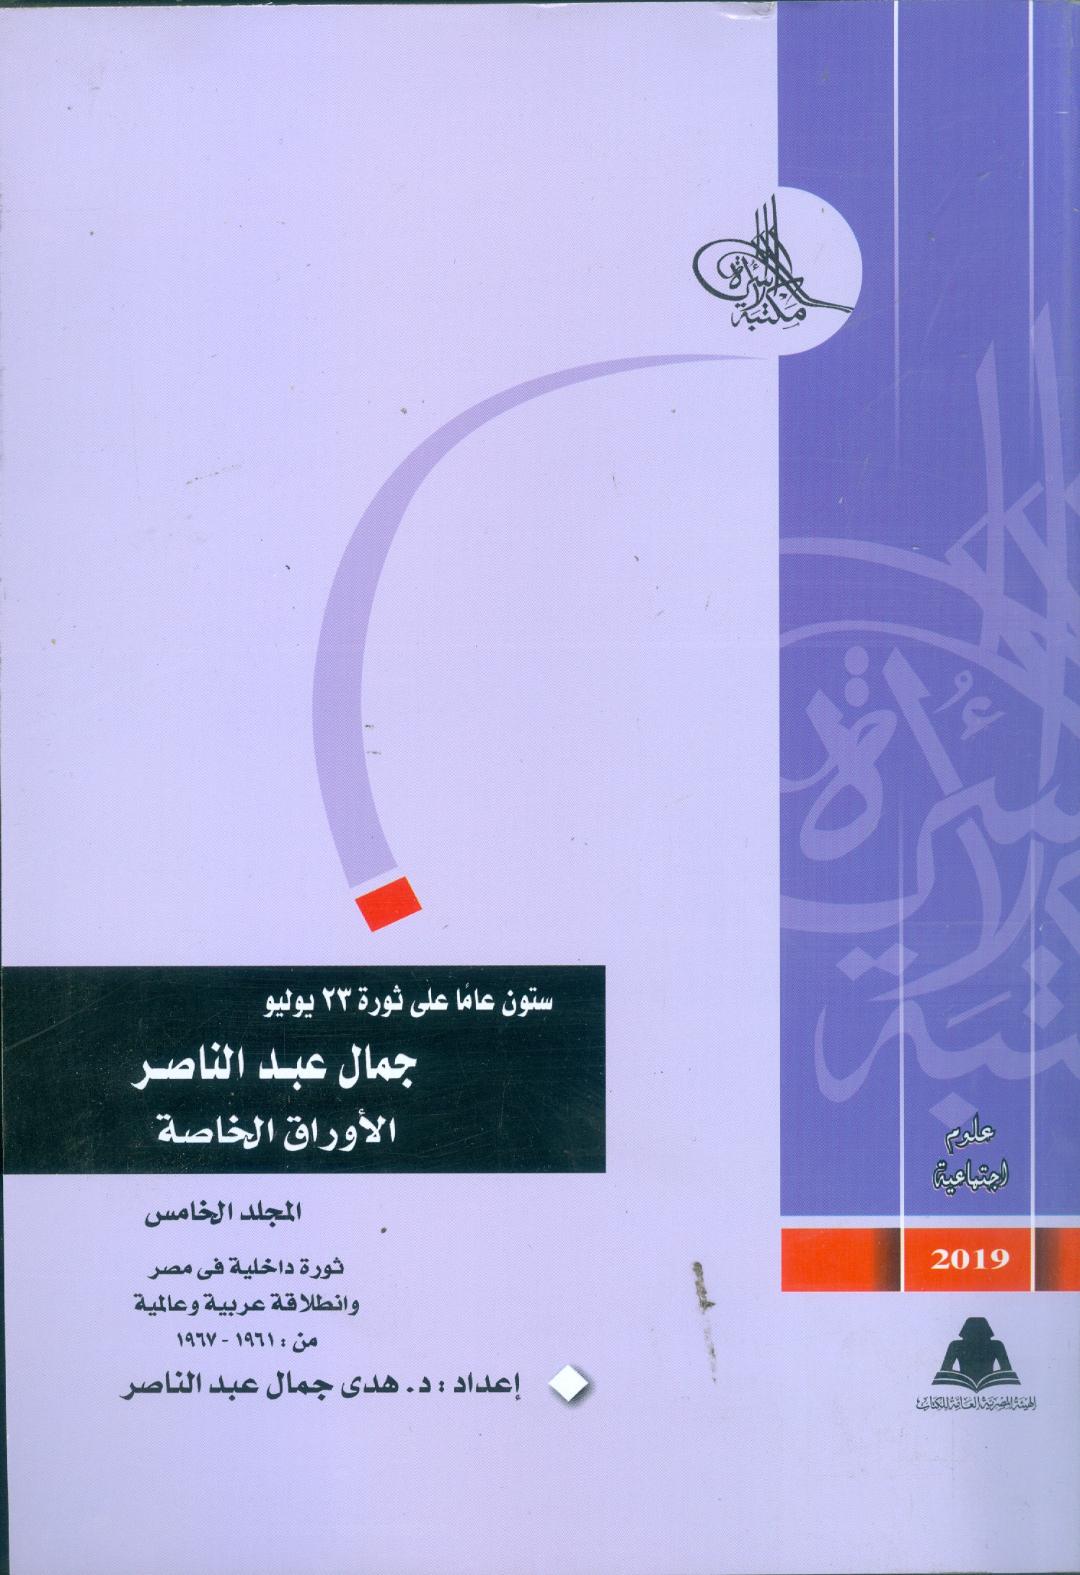   المجلد الخامس من أوراق عبد الناصر فى مكتبة الأسرة